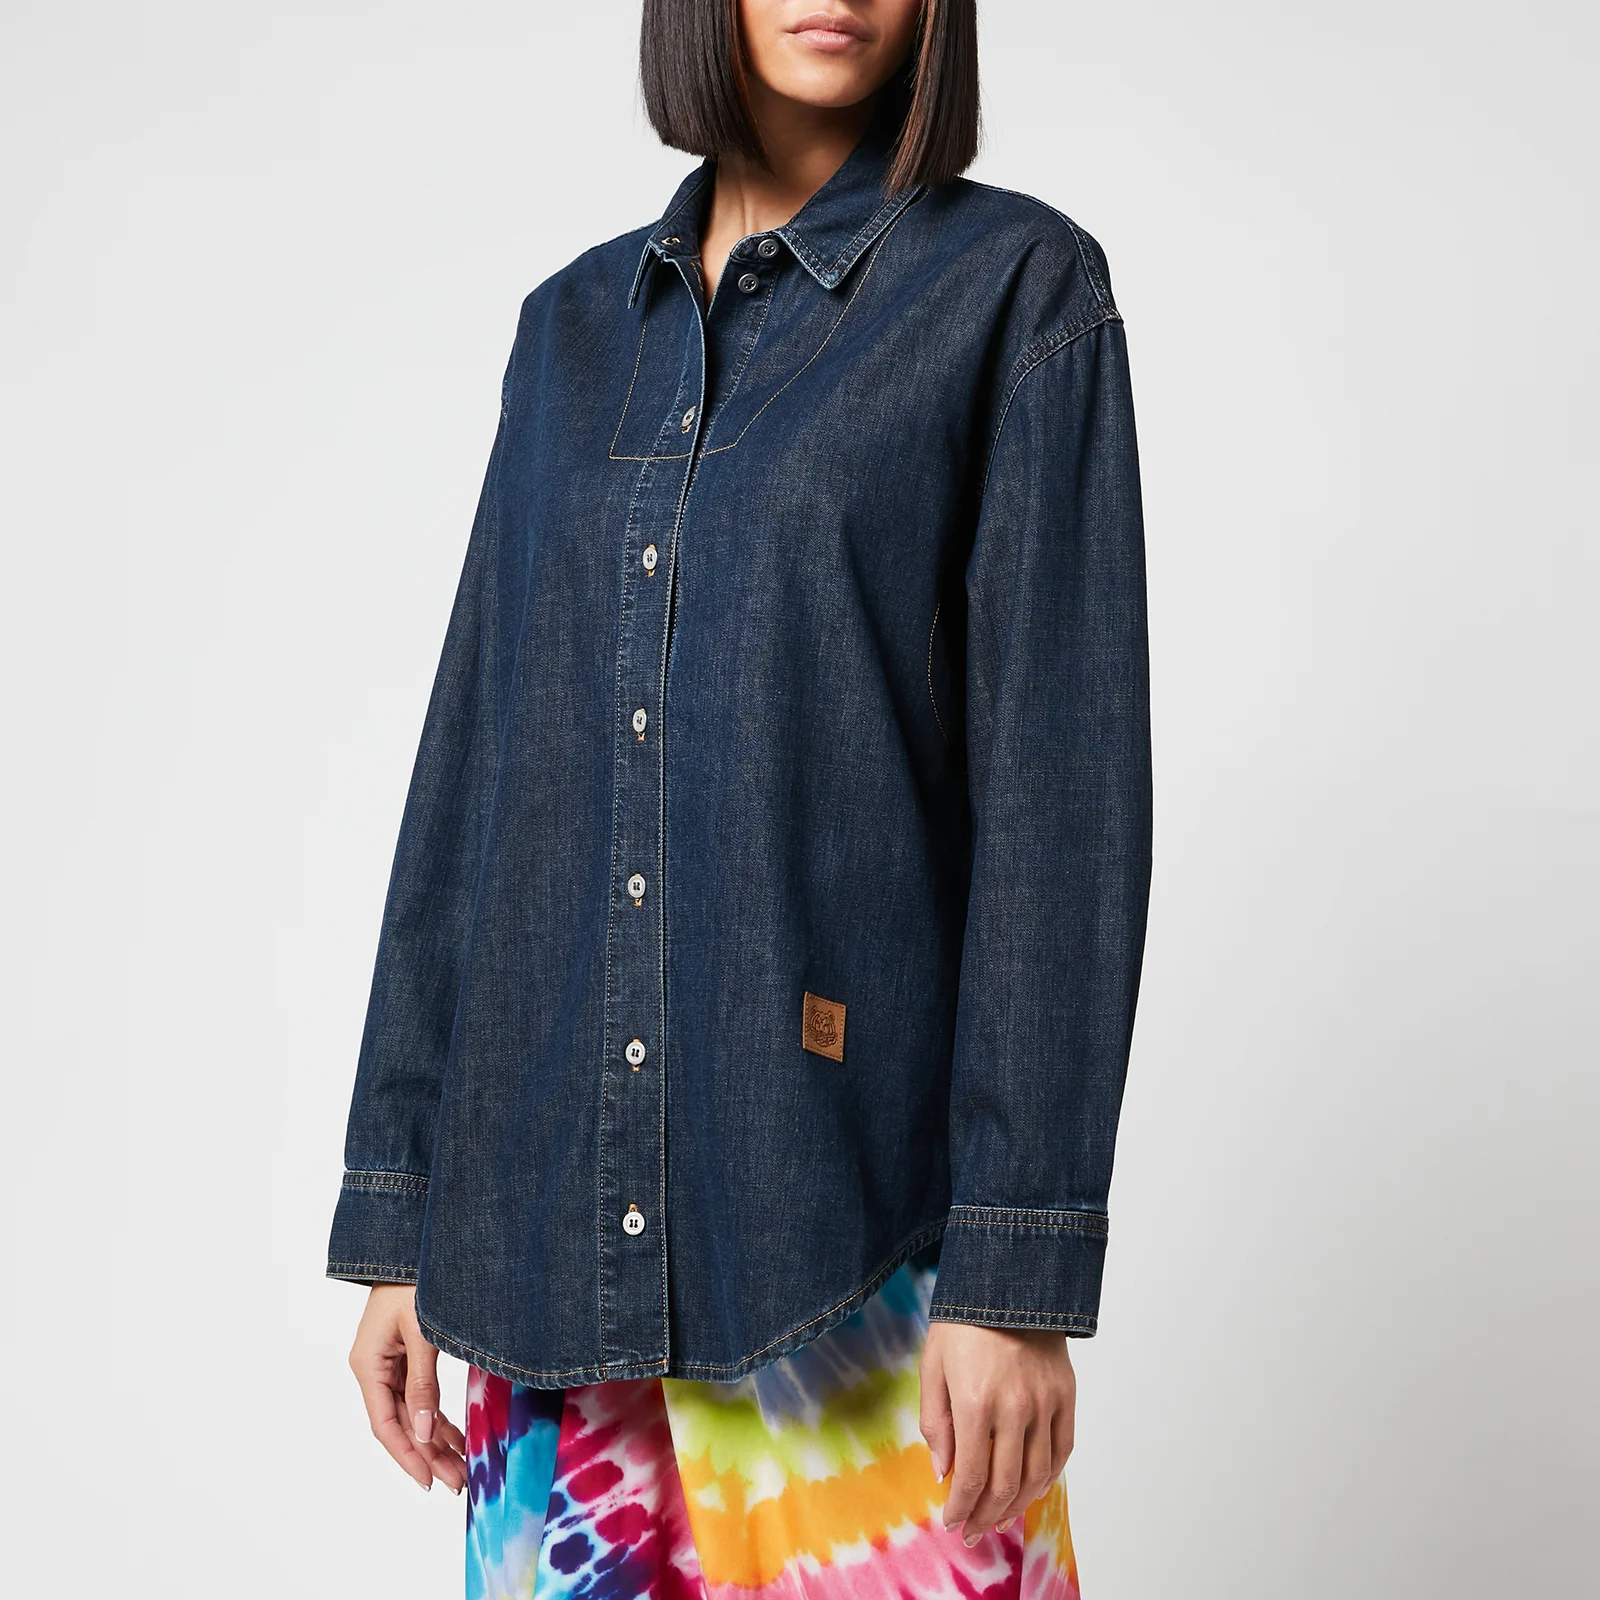 KENZO Women's Denim Shirt - Midnight Blue Image 1